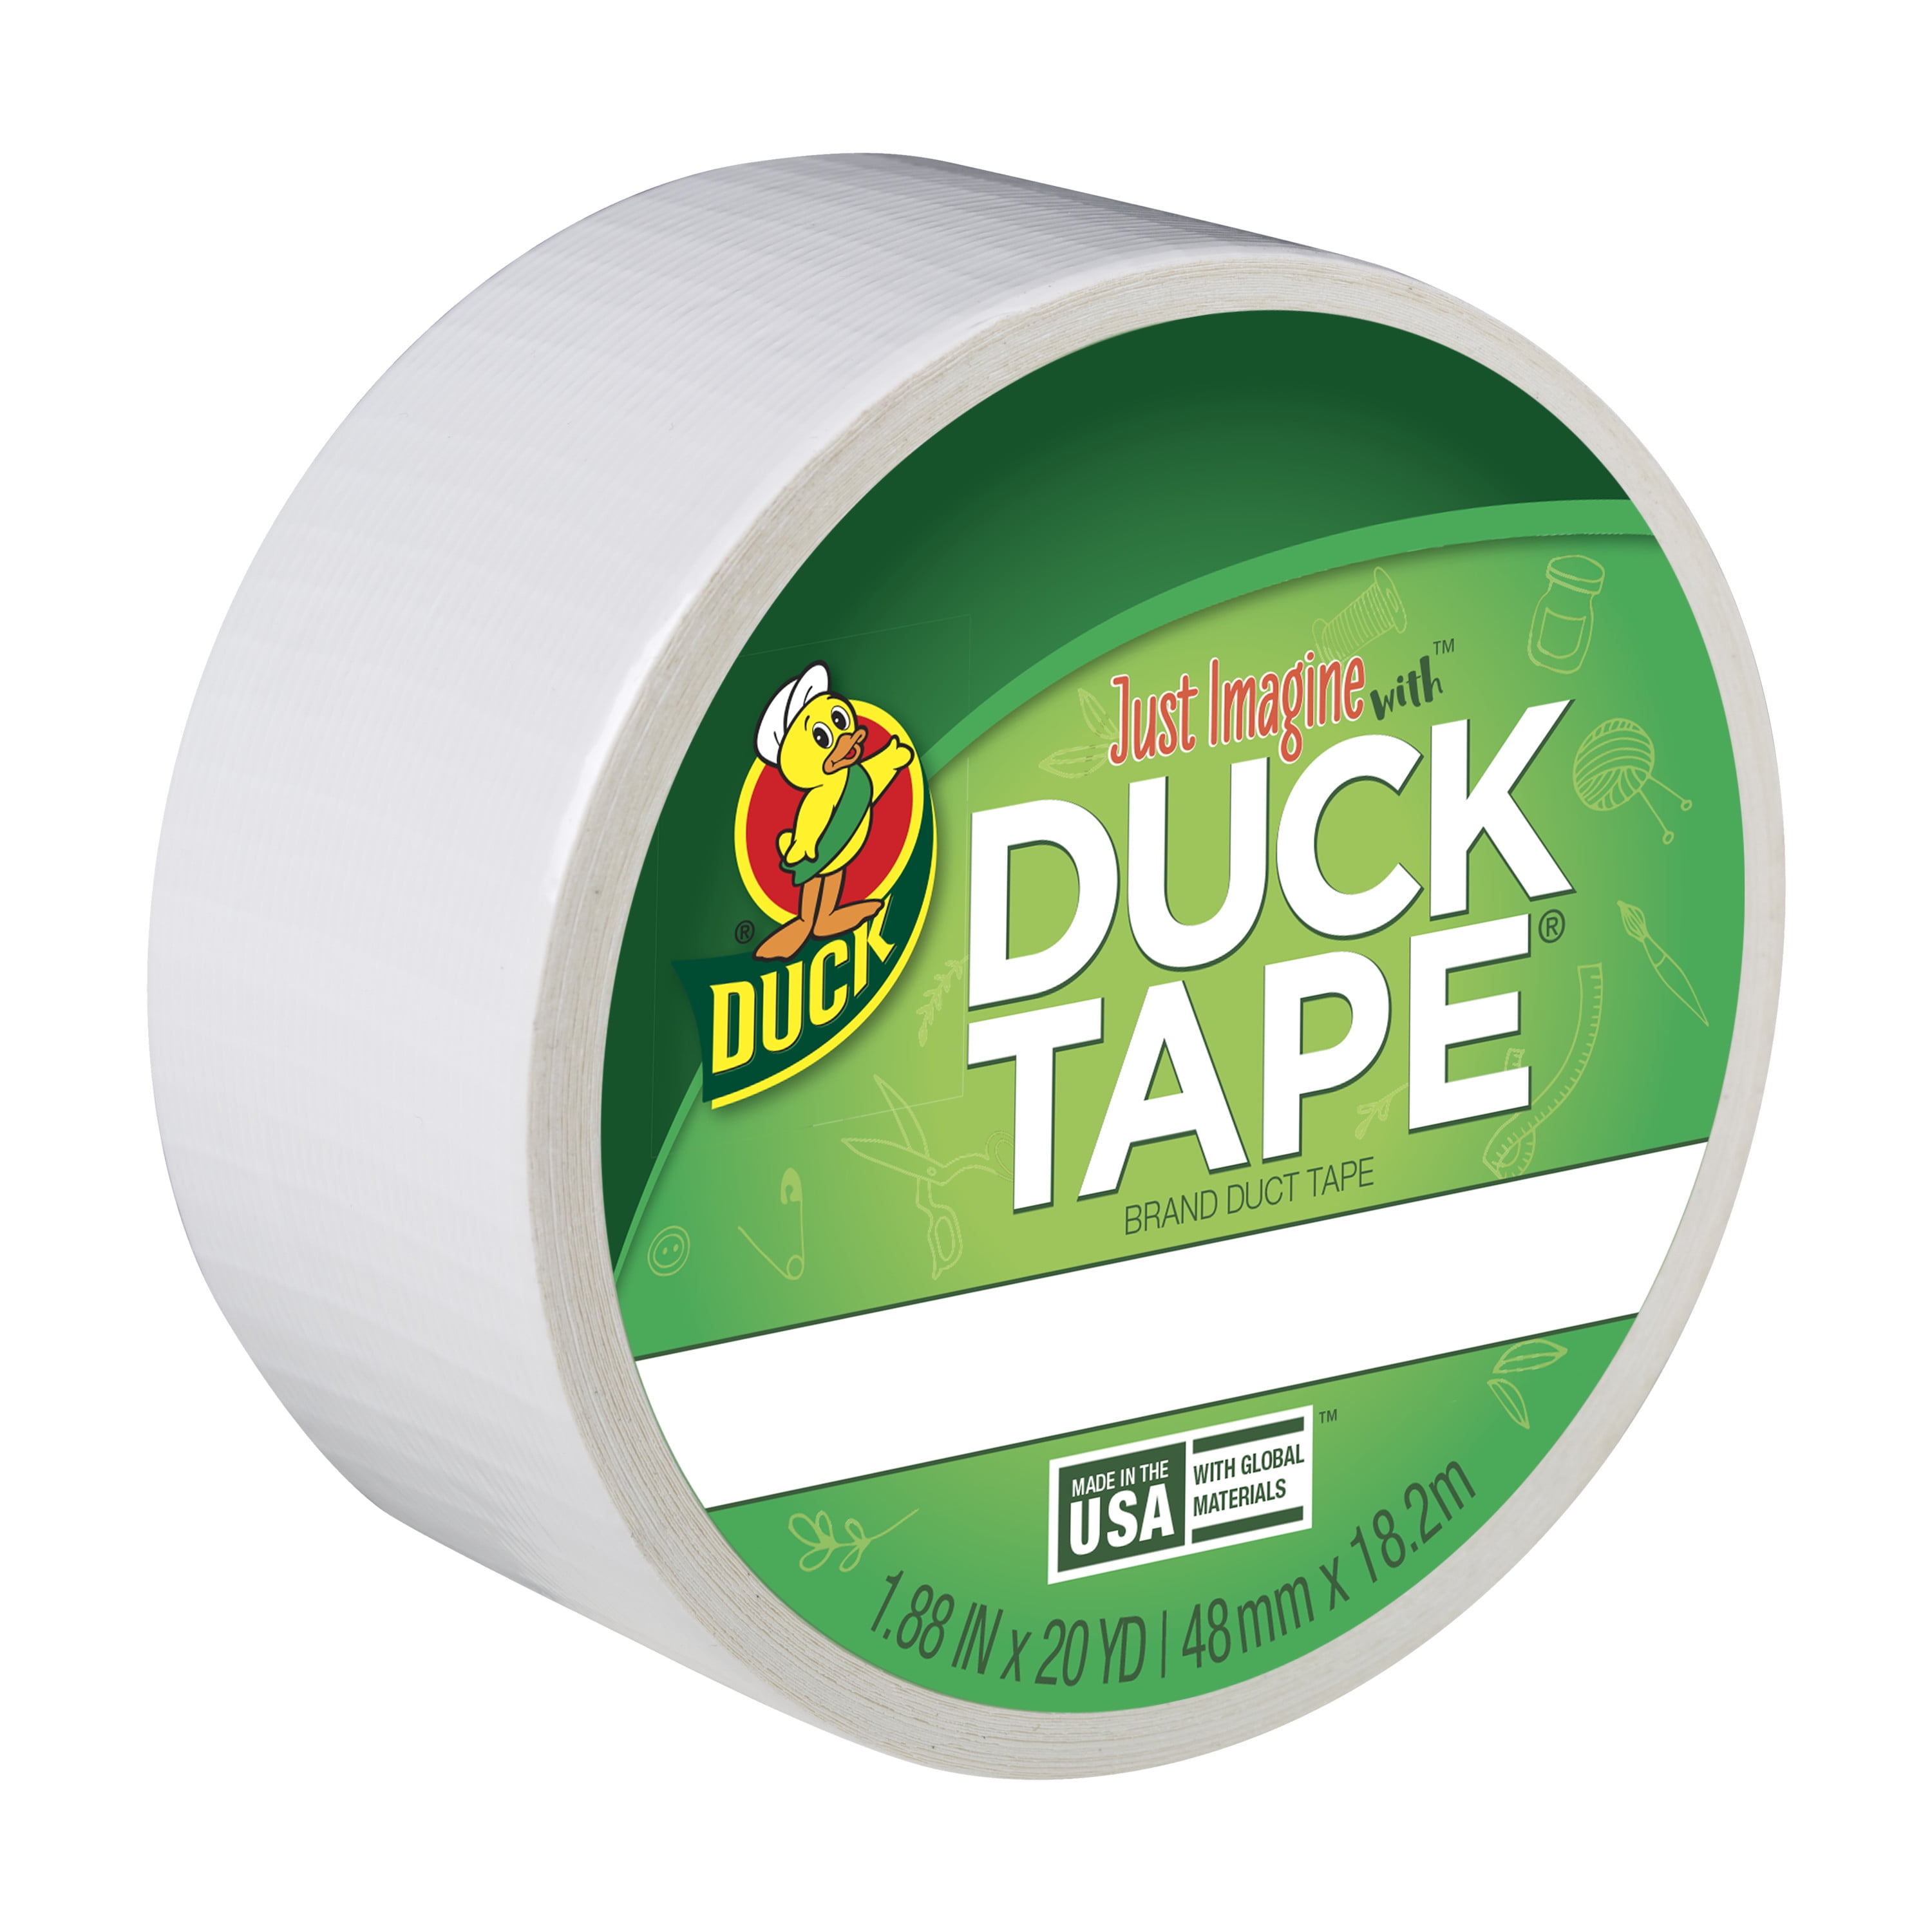 Duck 1265015 1.88 x 20 yd Winking Tape, Single Roll, White